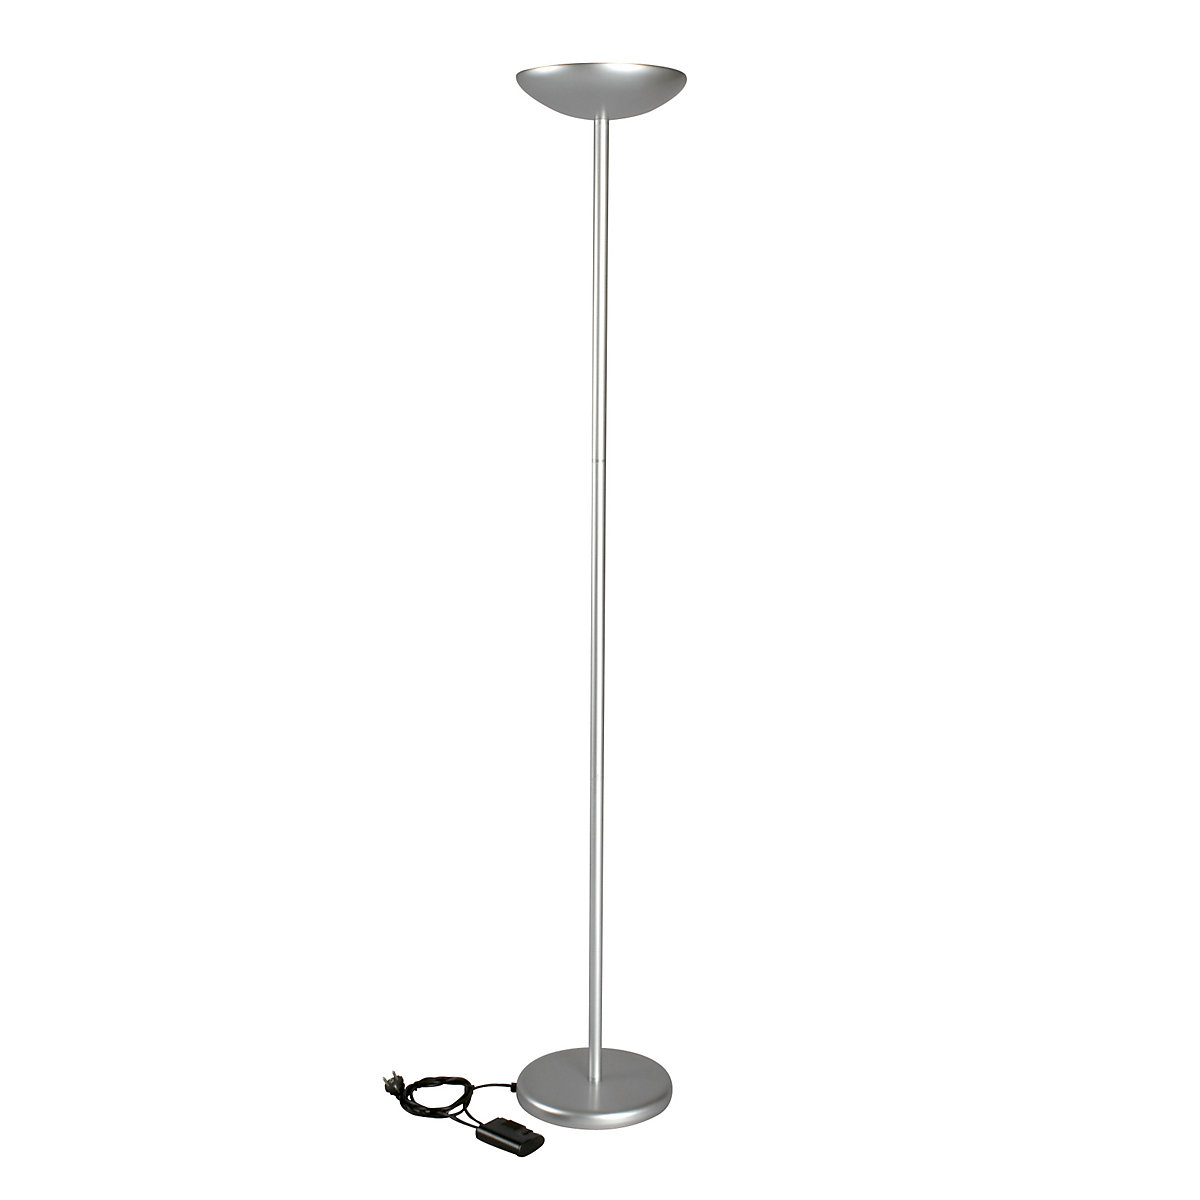 Stoječa halogenska svetilka, obrnejna v strop – MAUL, 120 W, možnost zatemnitve, srebrna-2